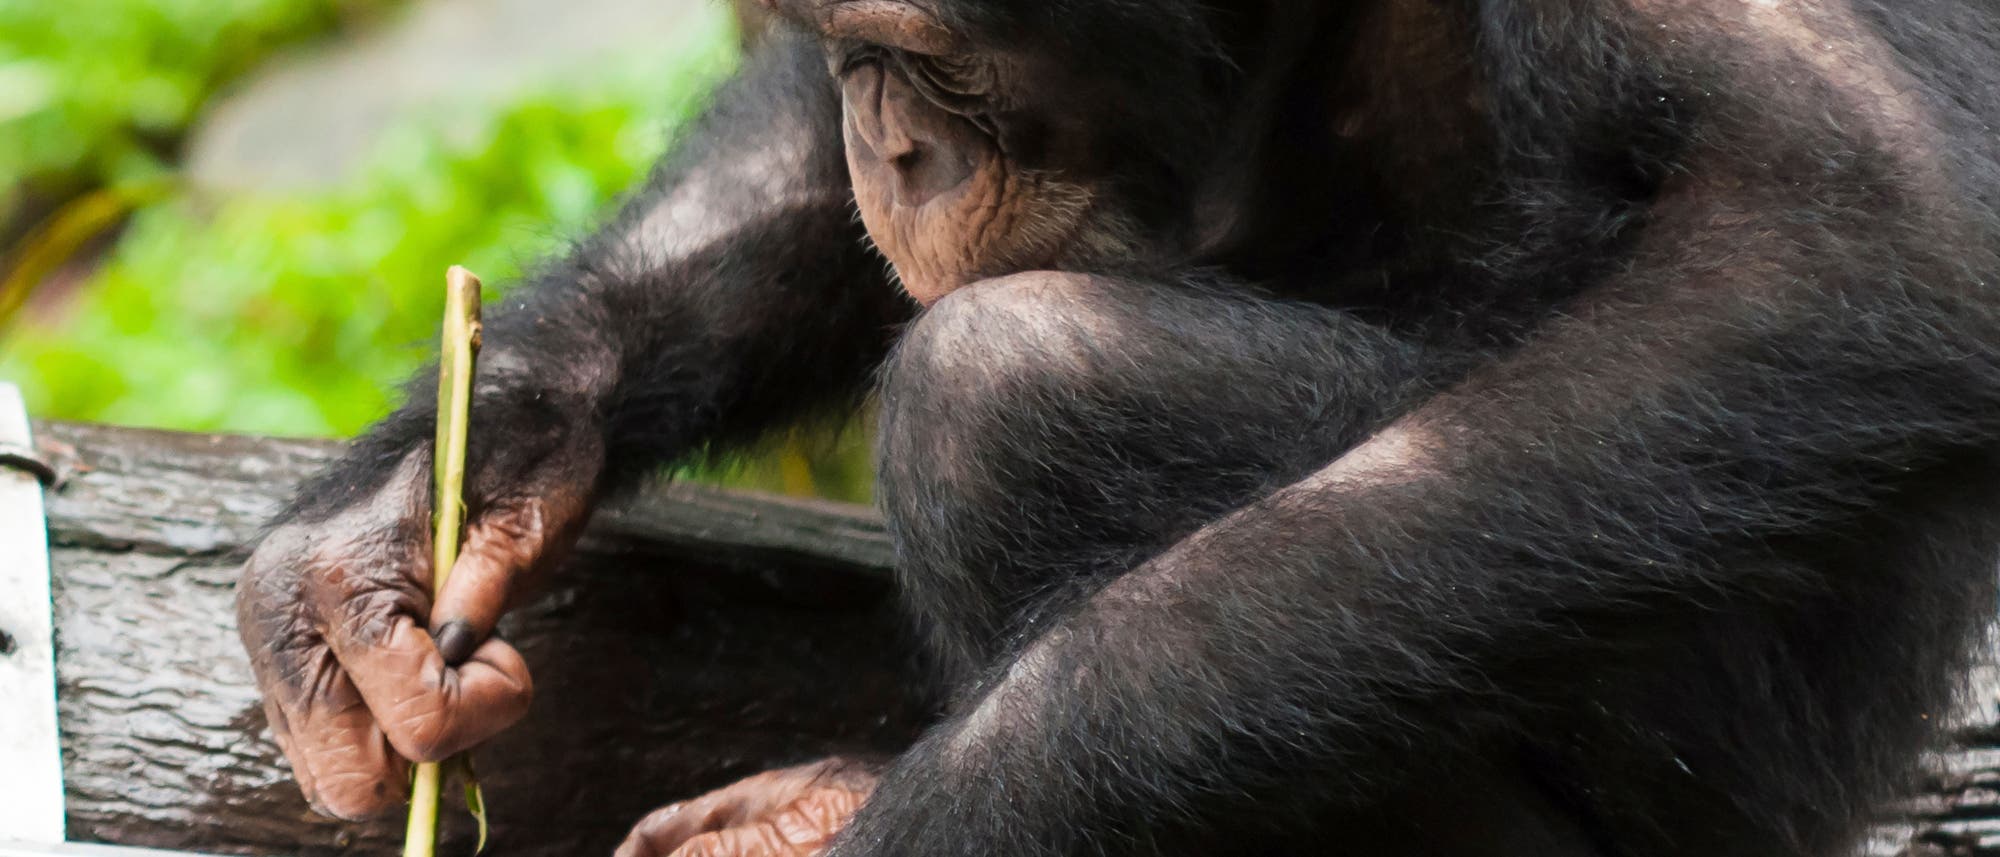 Schimpanse, der mit einem Stock Insekten aus einer Furche kratzt